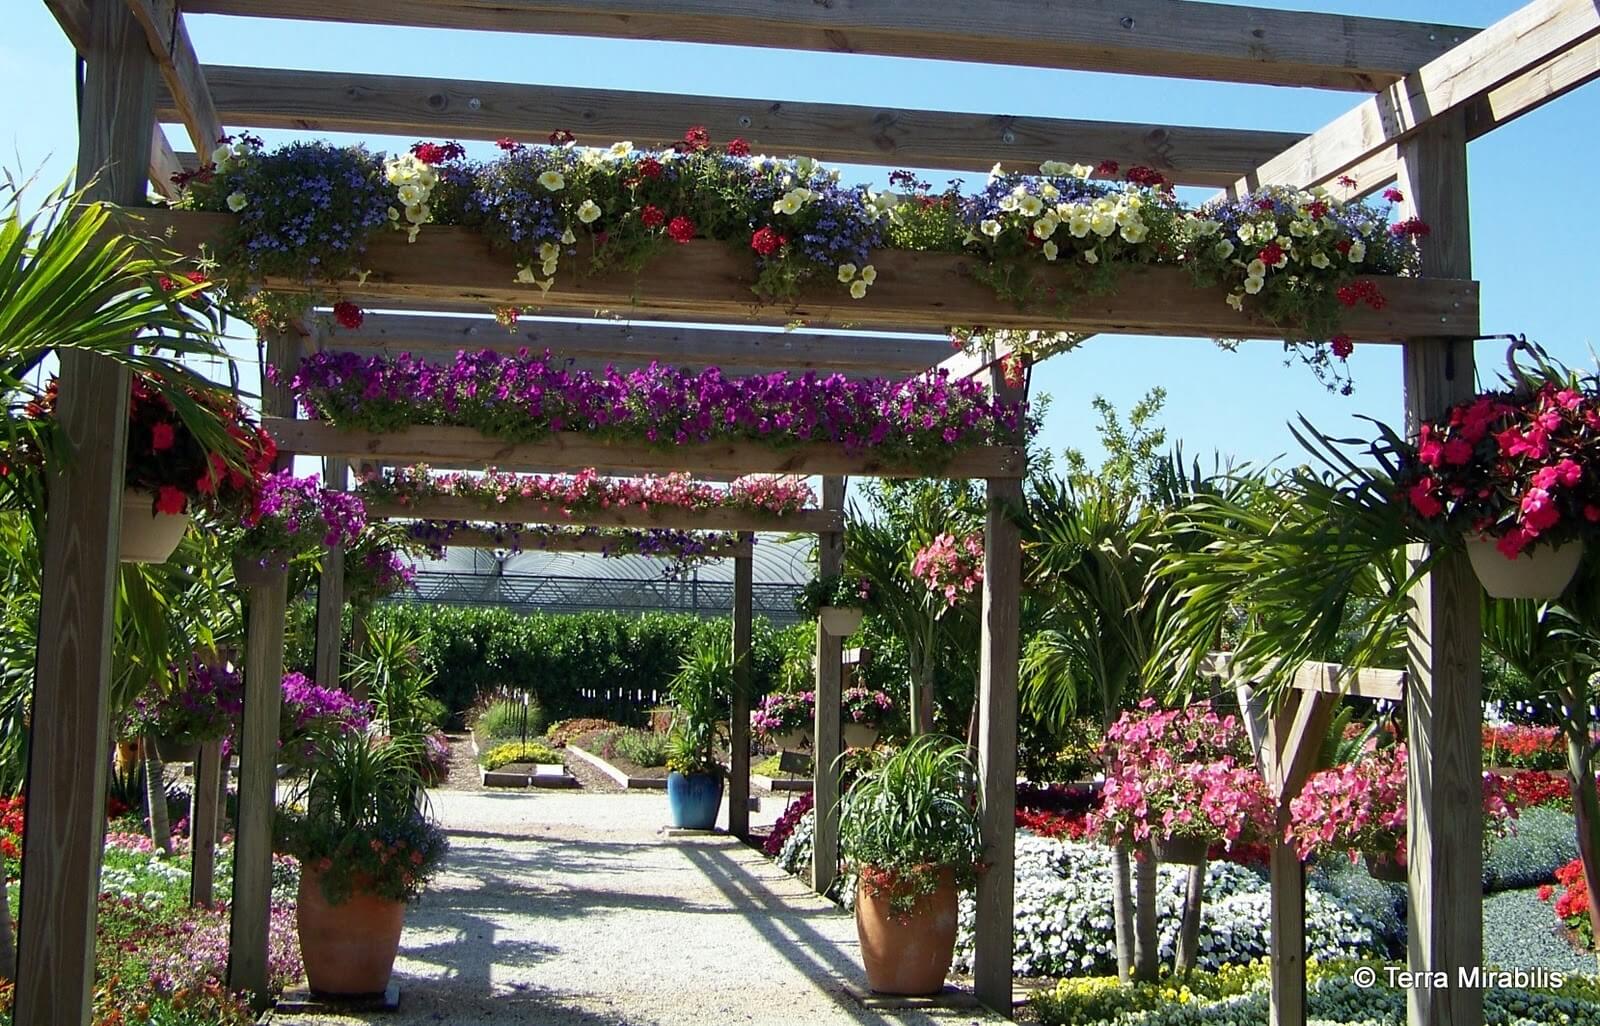 DIY Pergola Ideas: Botanical Promenade Pergola With Planter Implements